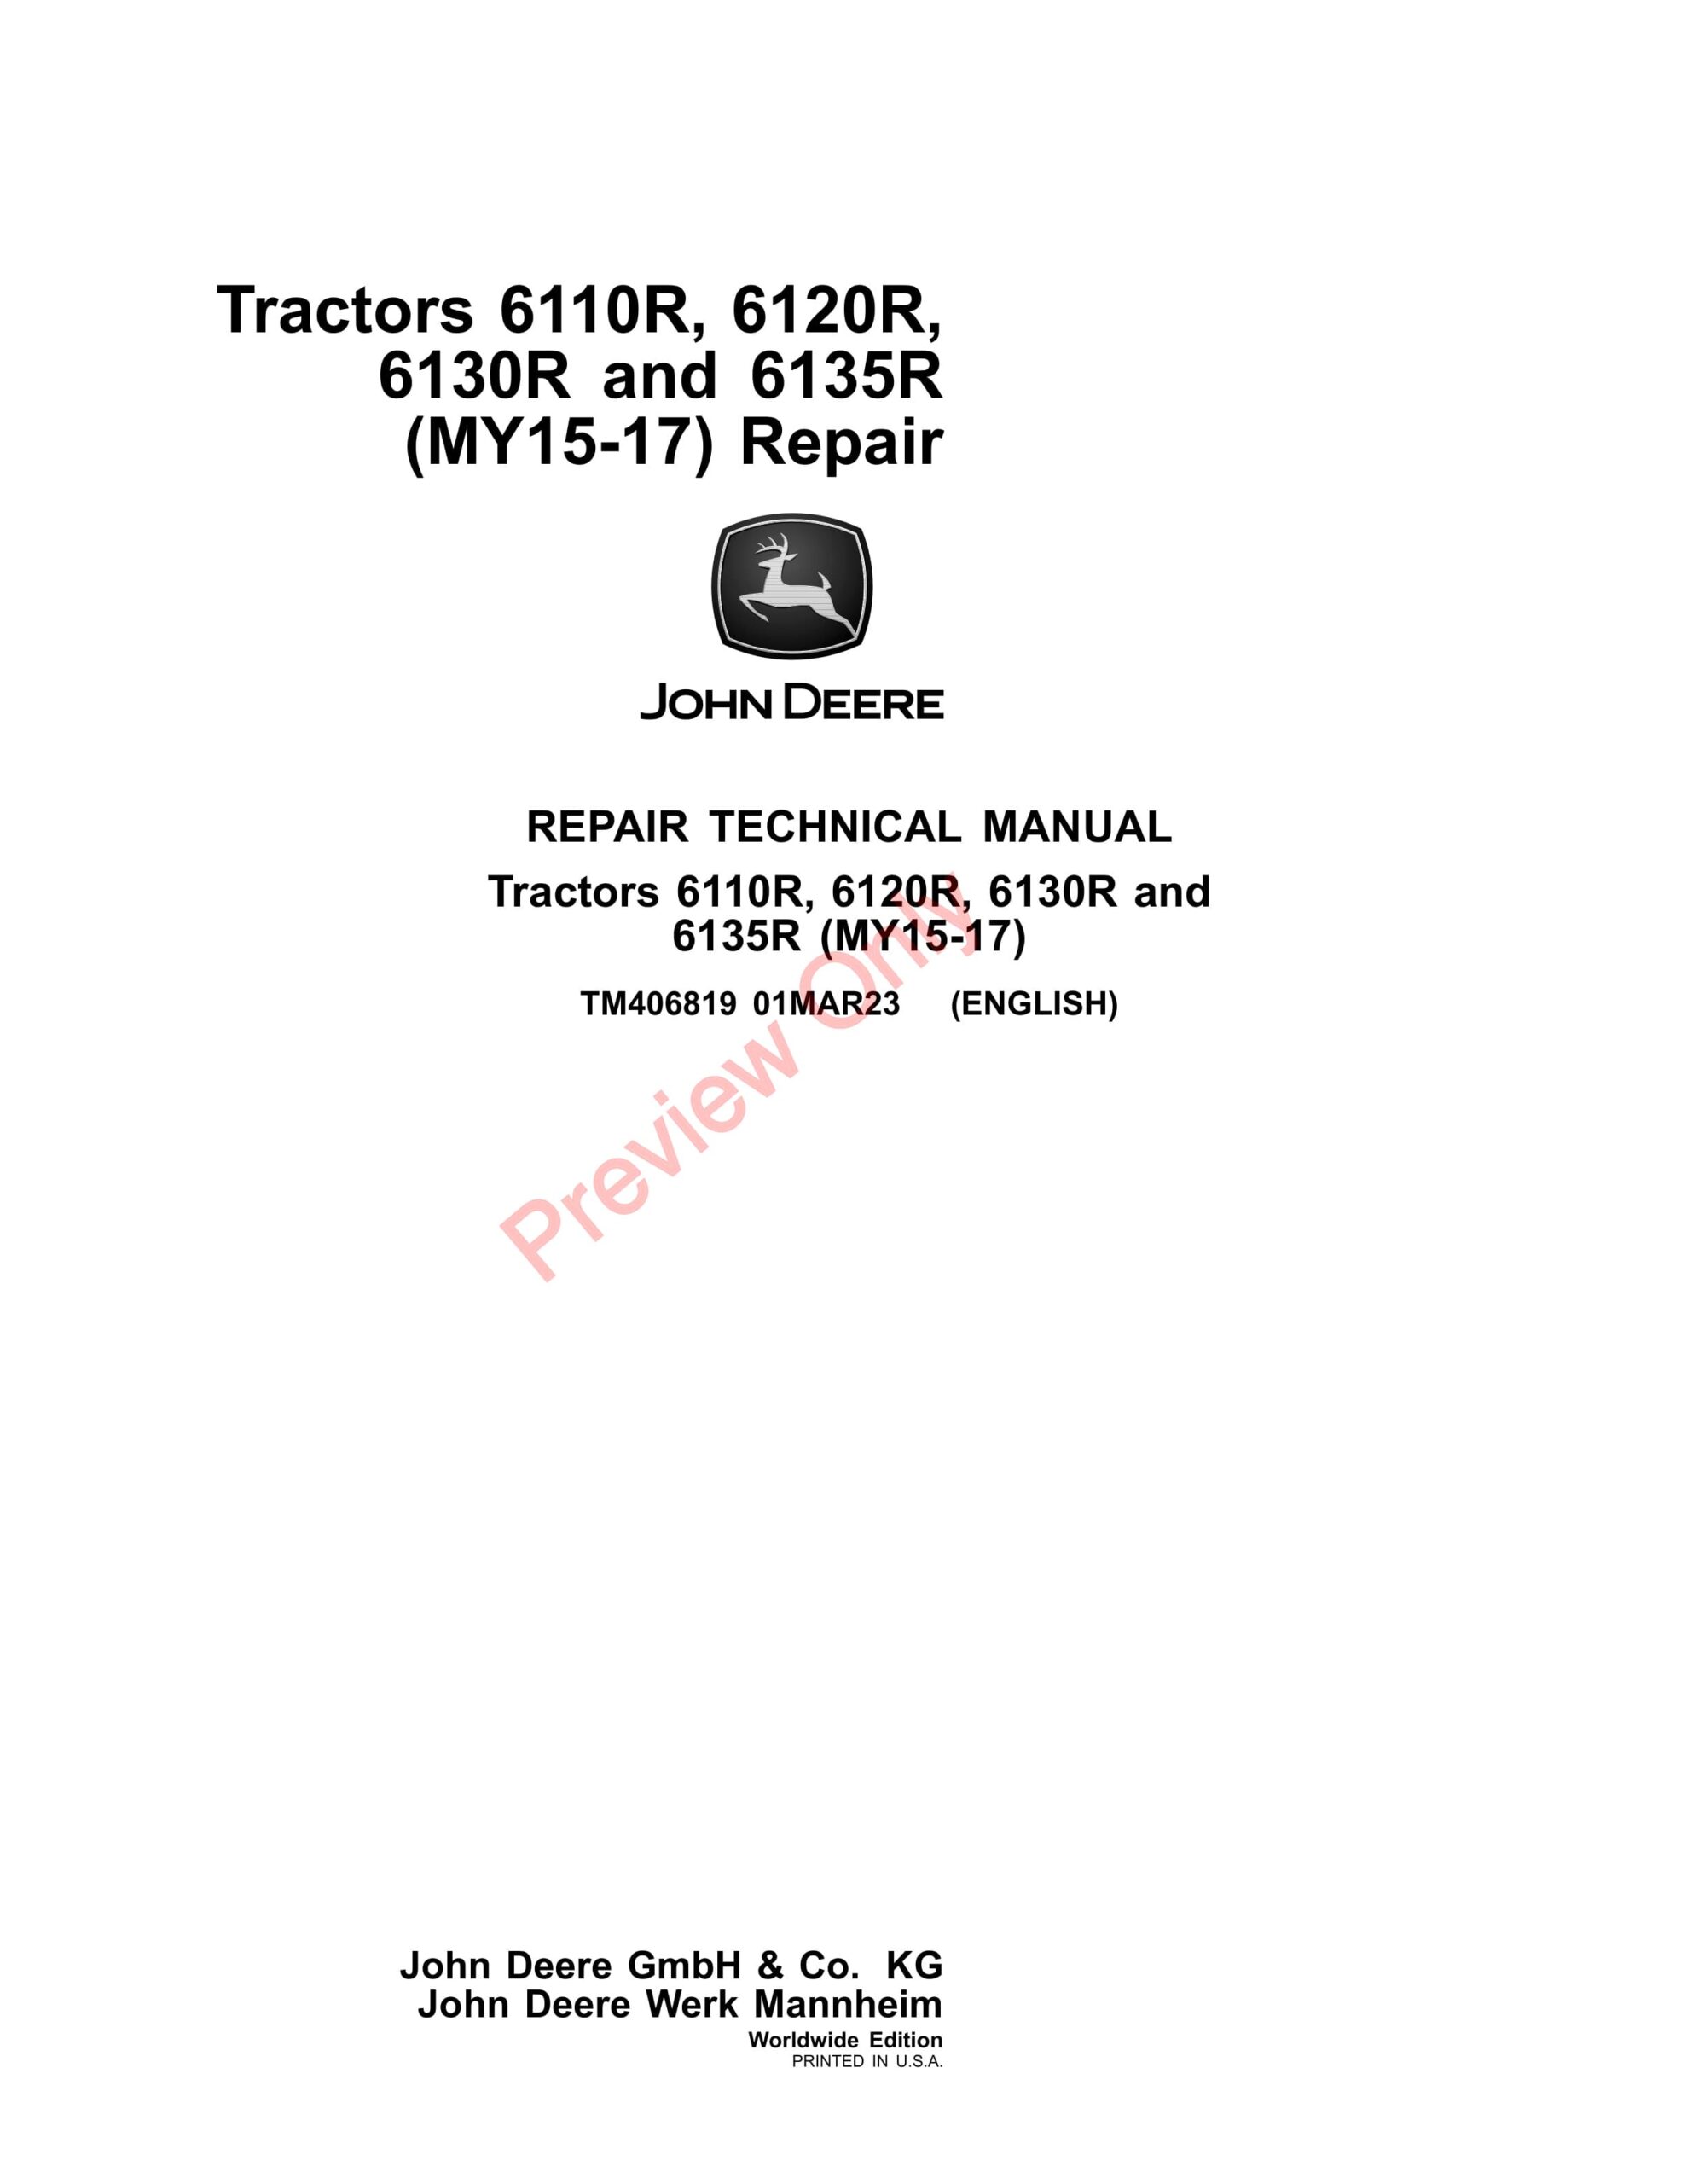 John Deere 6110R, 6120R, 6130R, 6135R Tractors (MY15-17) Repair Technical Manual TM406819 01MAR23-1